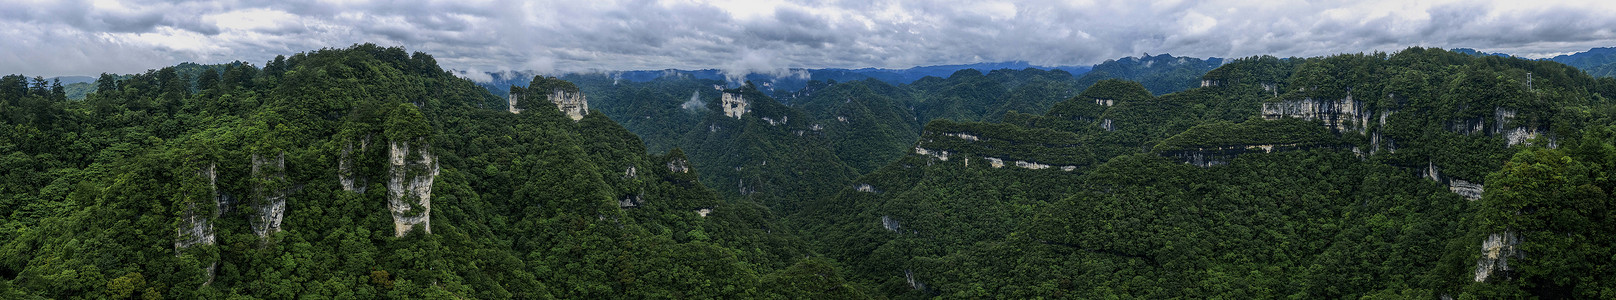 名称自定义世界自然遗产贵州施秉云台山航拍摄影图片背景